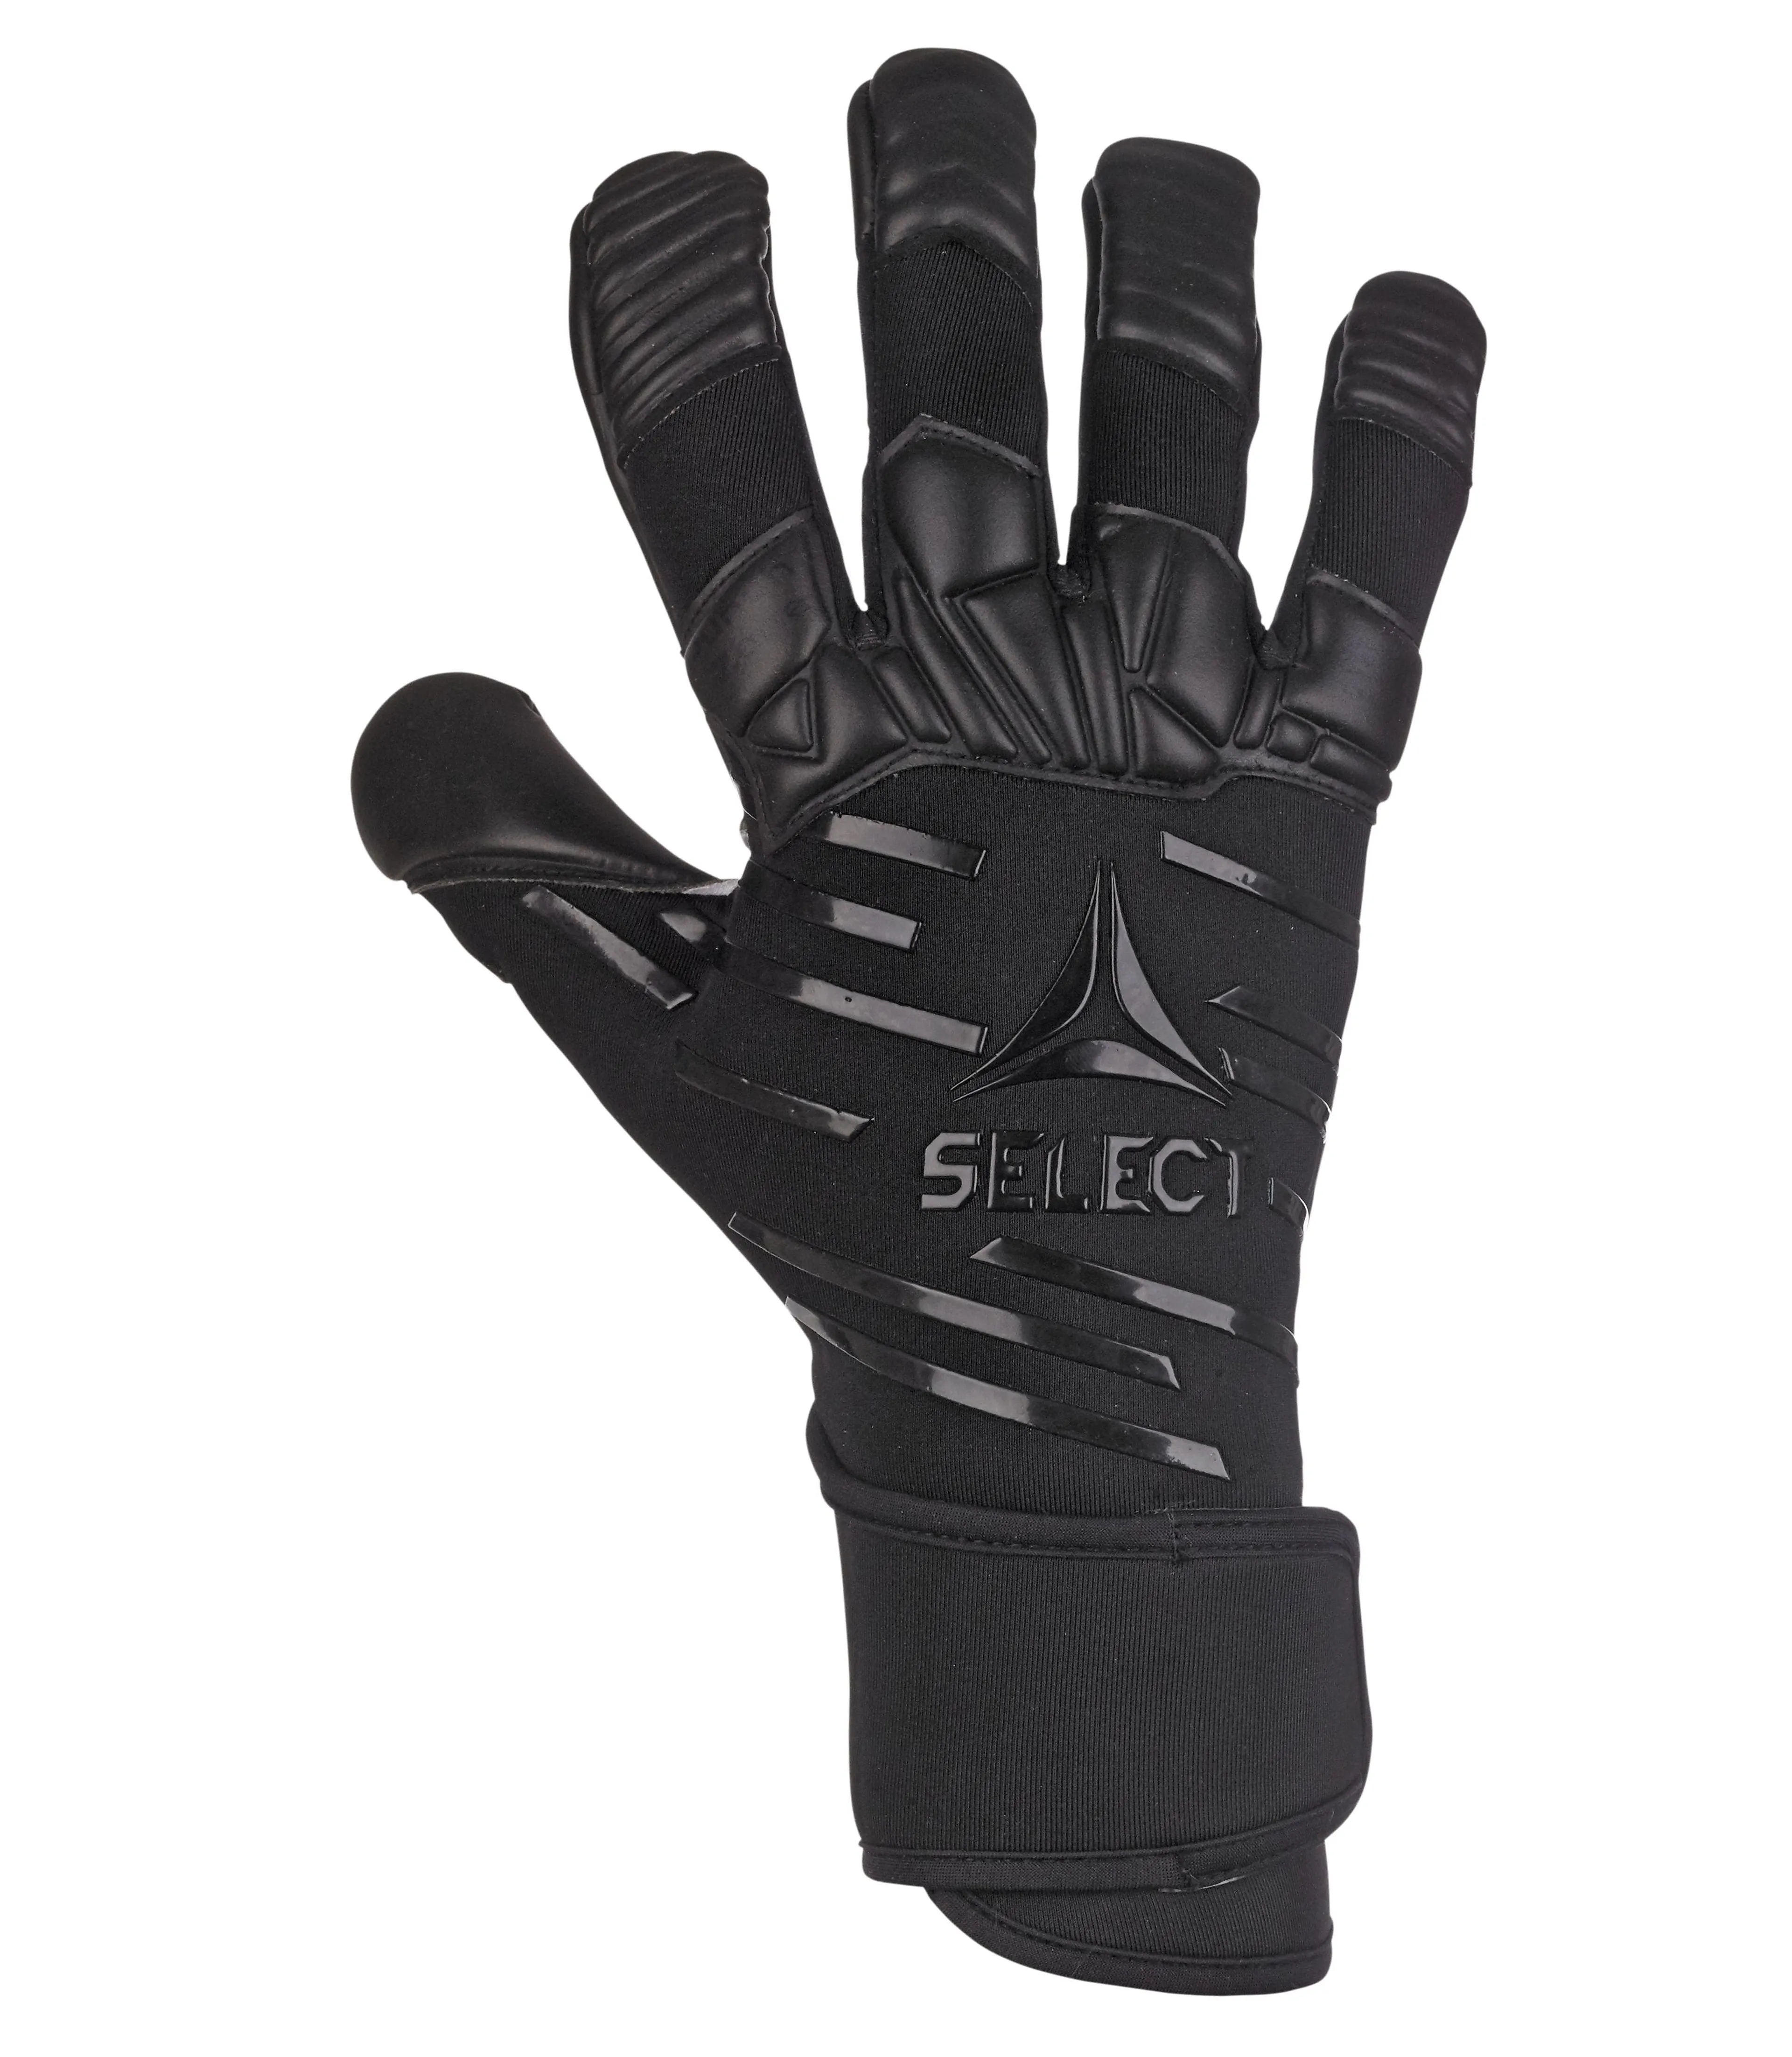 GK gloves 90 Flexi Pro v23